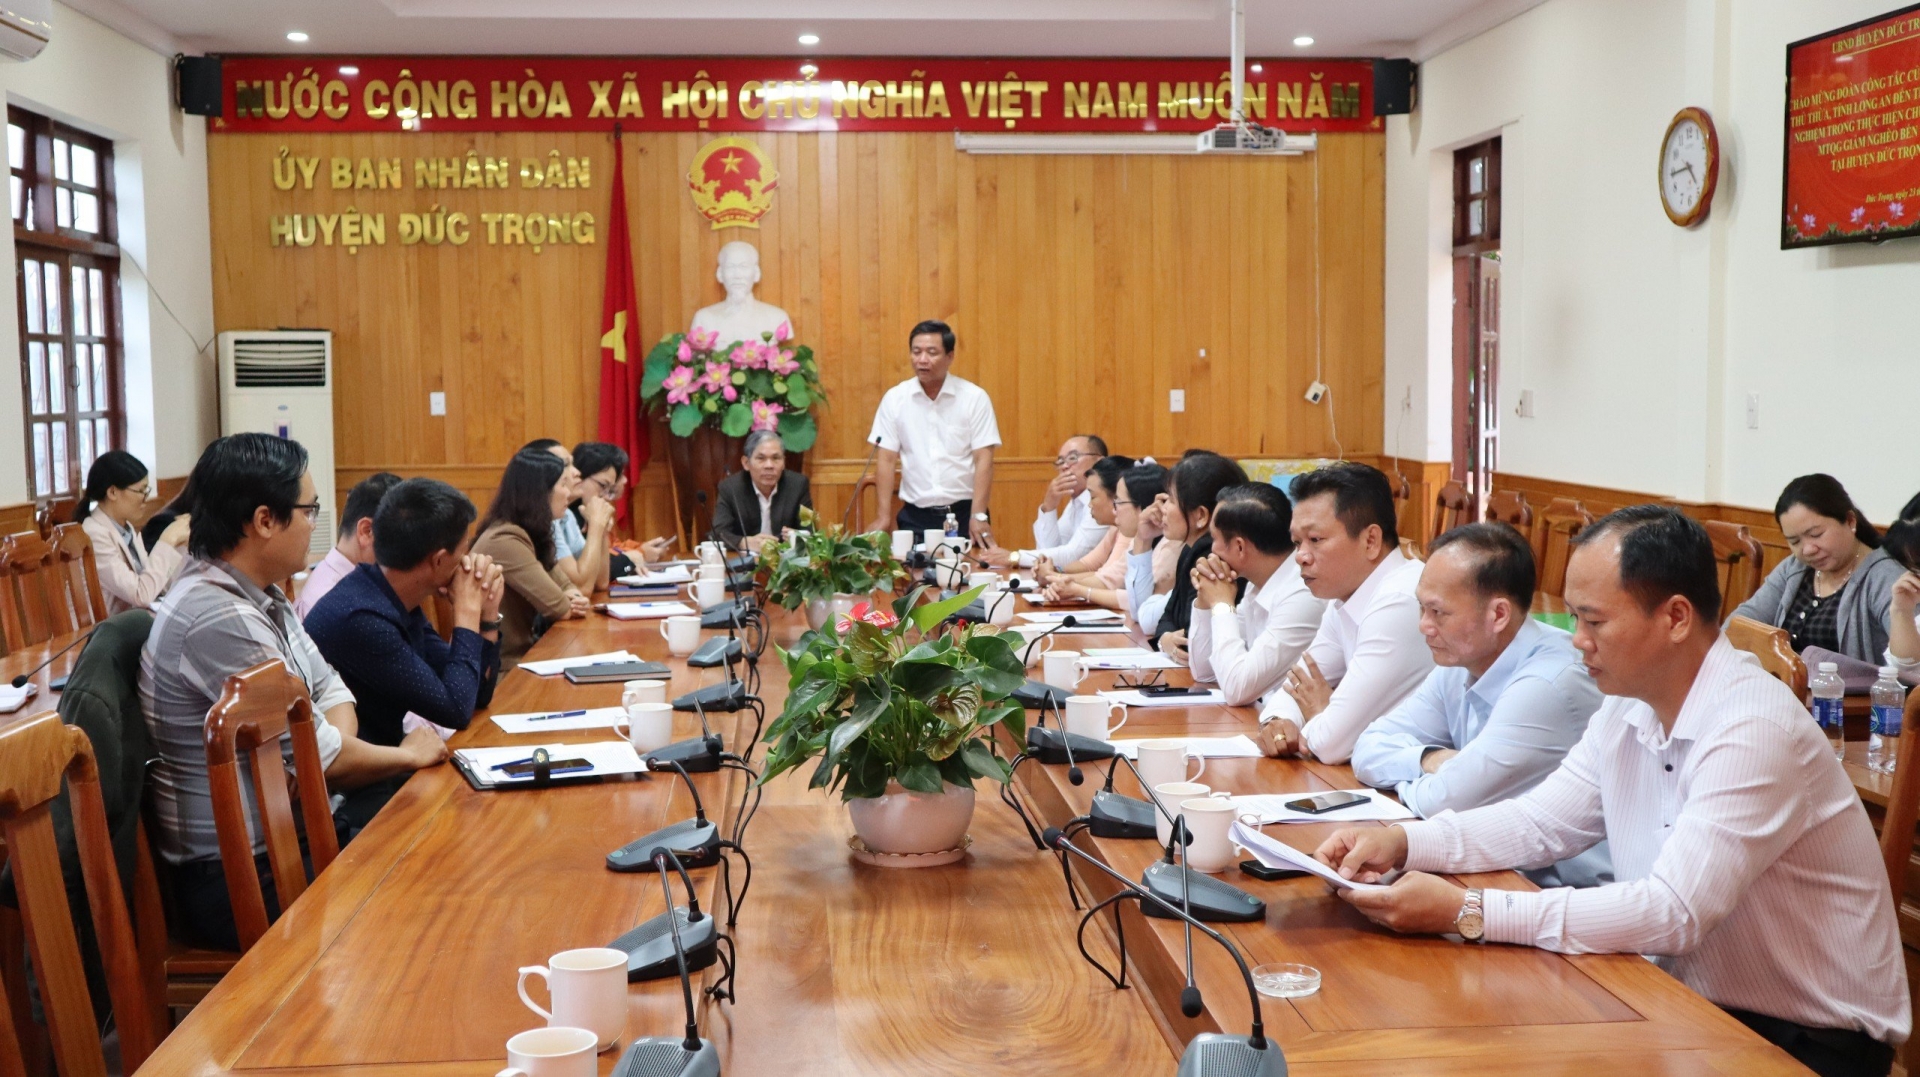 Đoàn công tác huyện Thủ Thừa đến tham quan, học tập kinh nghiệm tại huyện Đức Trọng